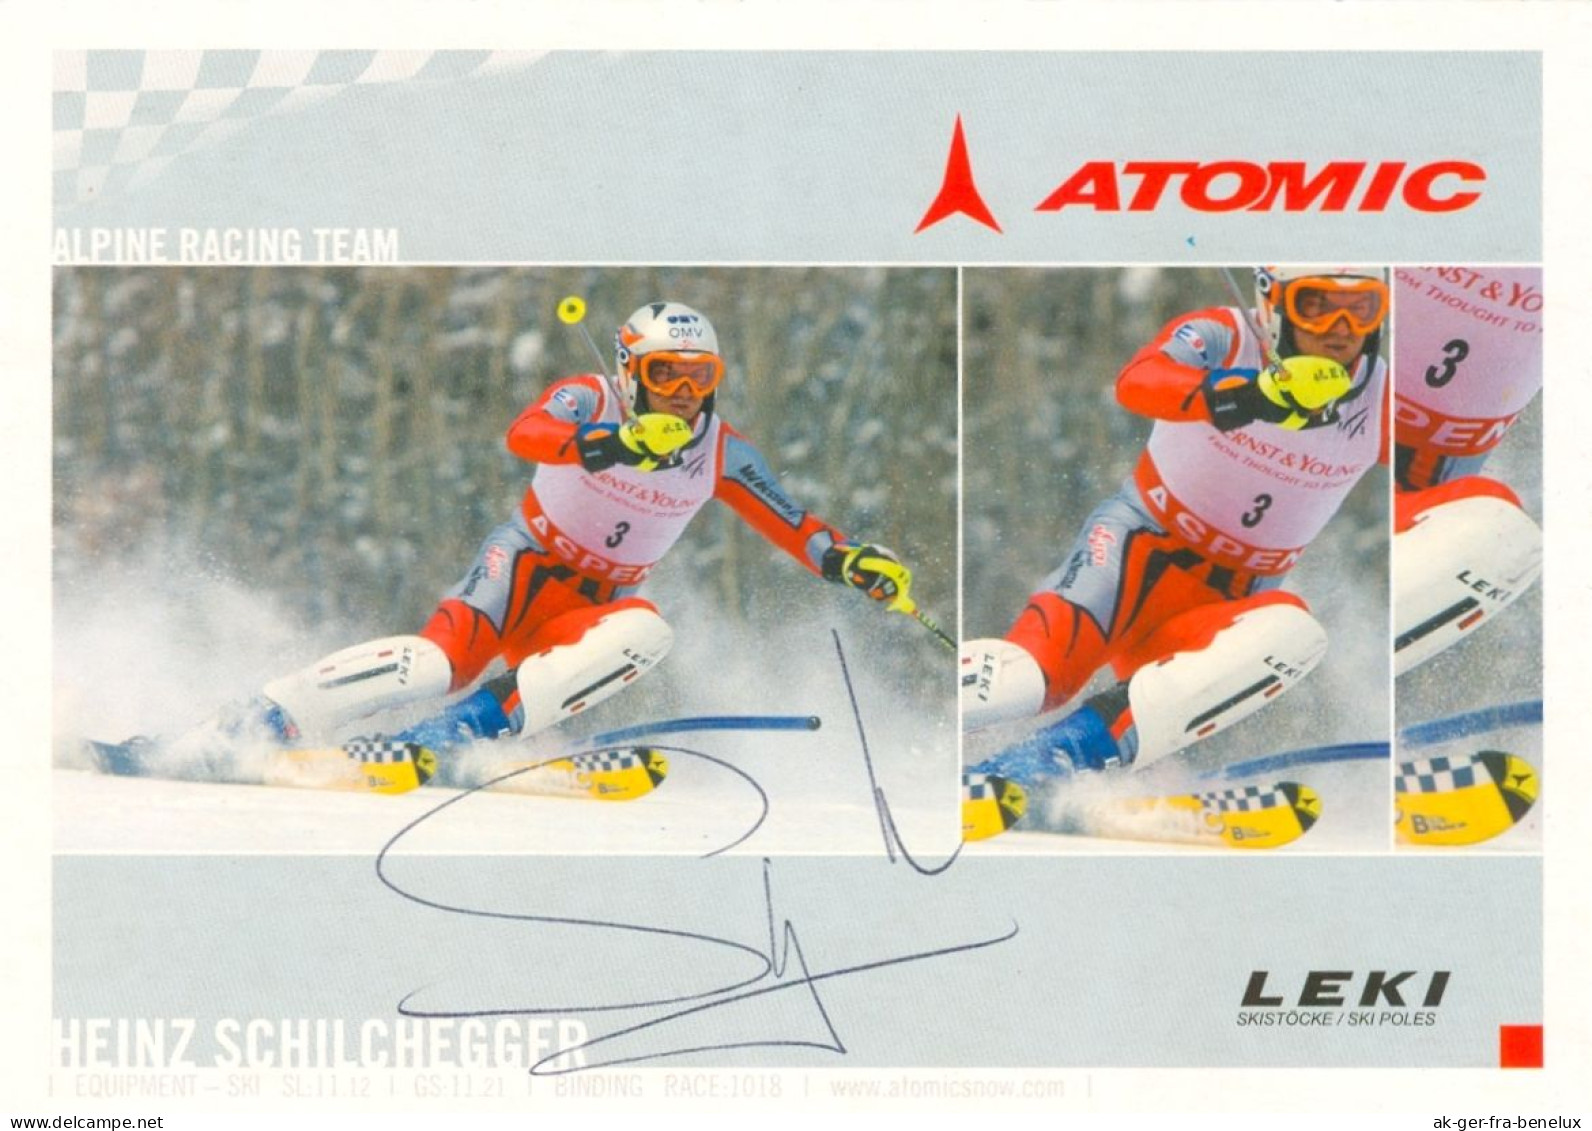 Autogramm Atomic AK Skifahrer Ski Alpin Heinz Schilchegger Radstadt Salzburg Obertauern Knittelfeld Österreich Austria - Winter Sports